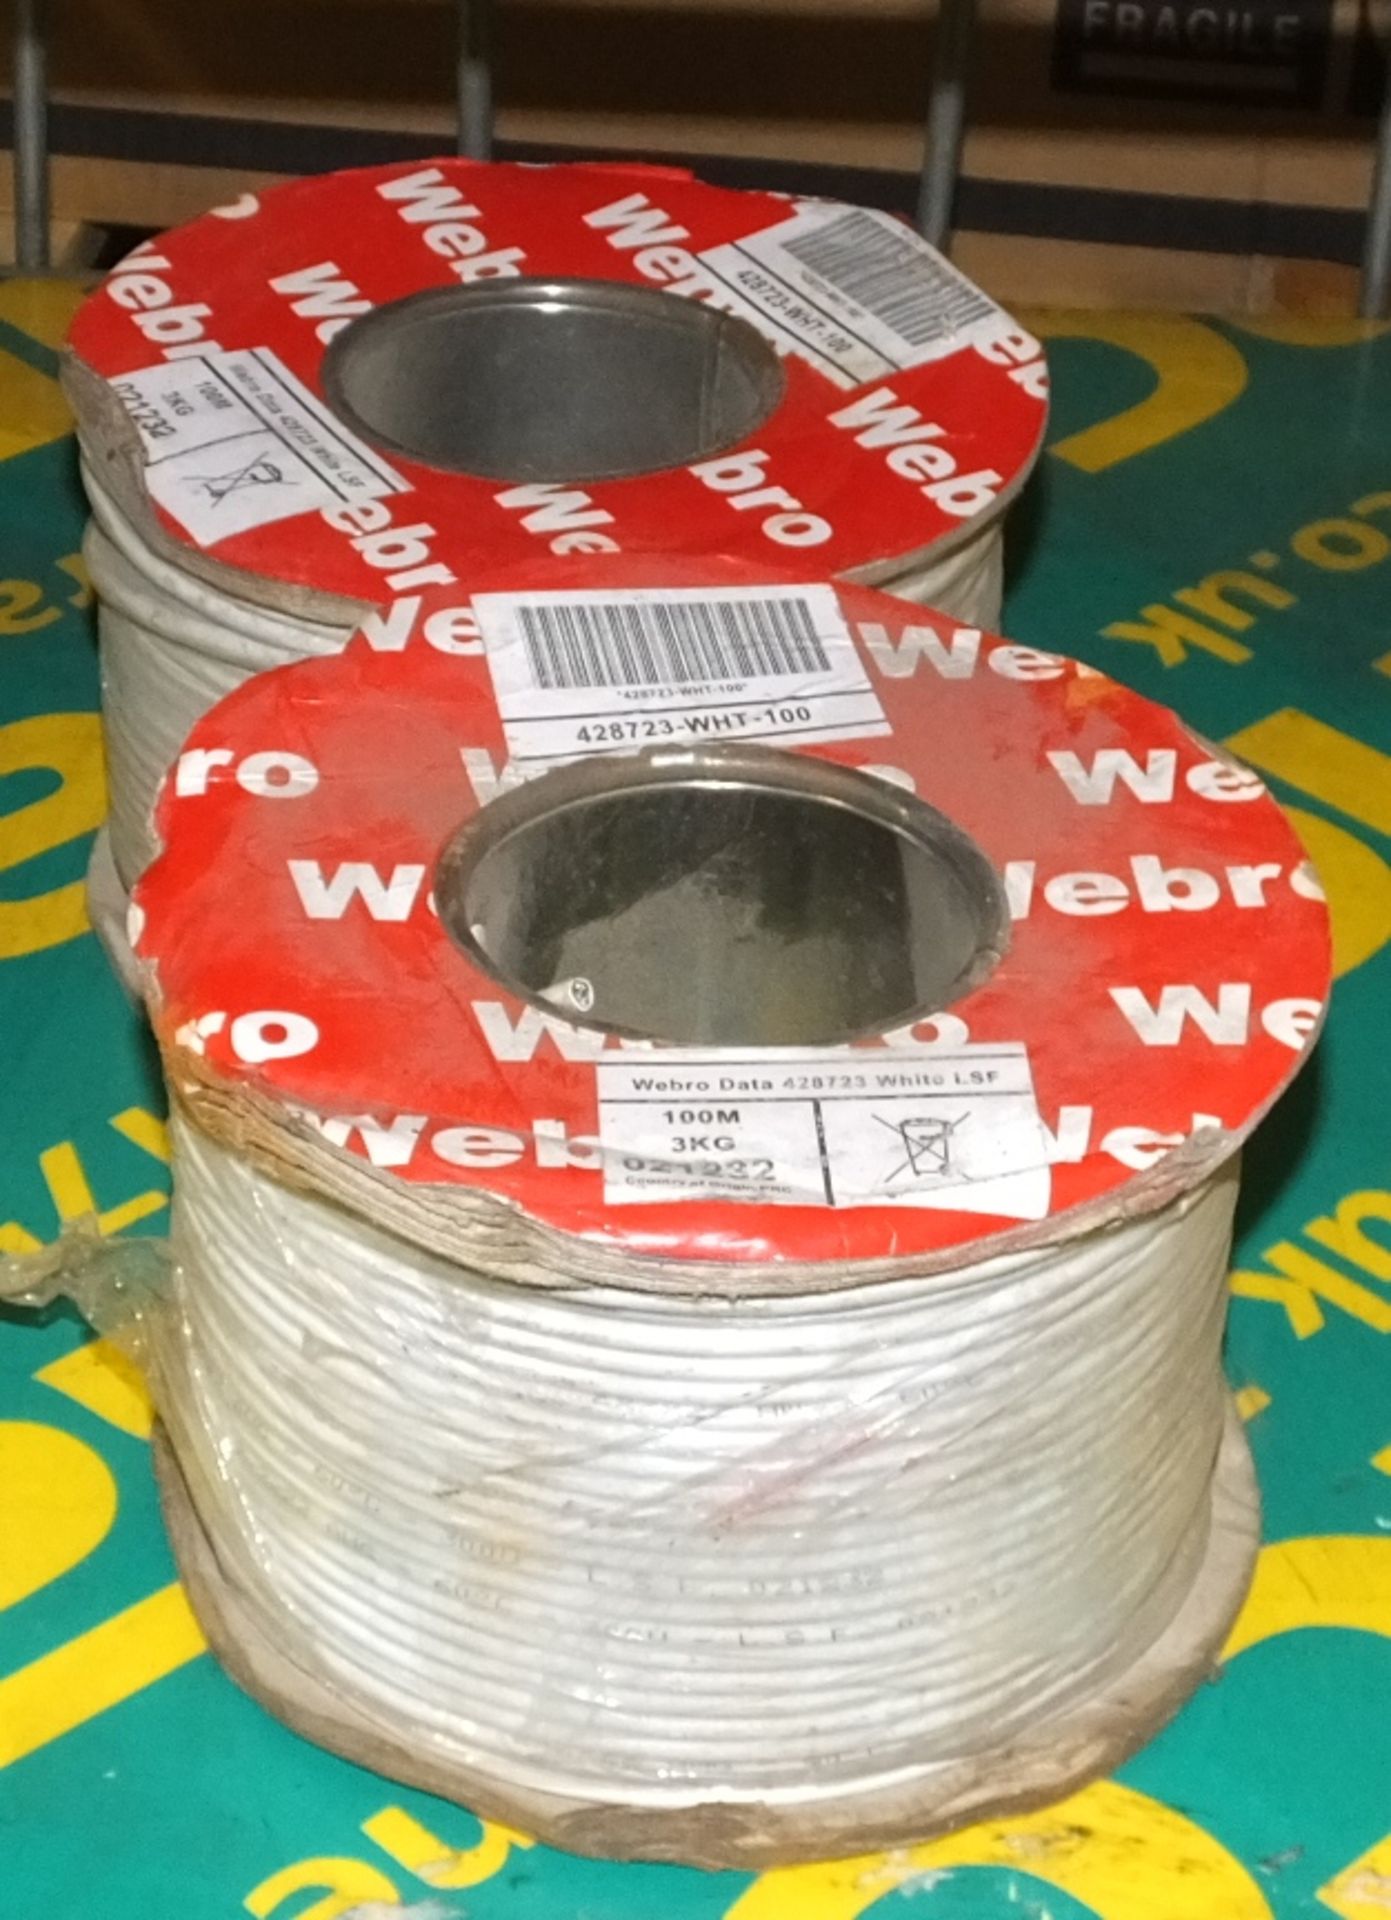 2x Reels of Webro Cable